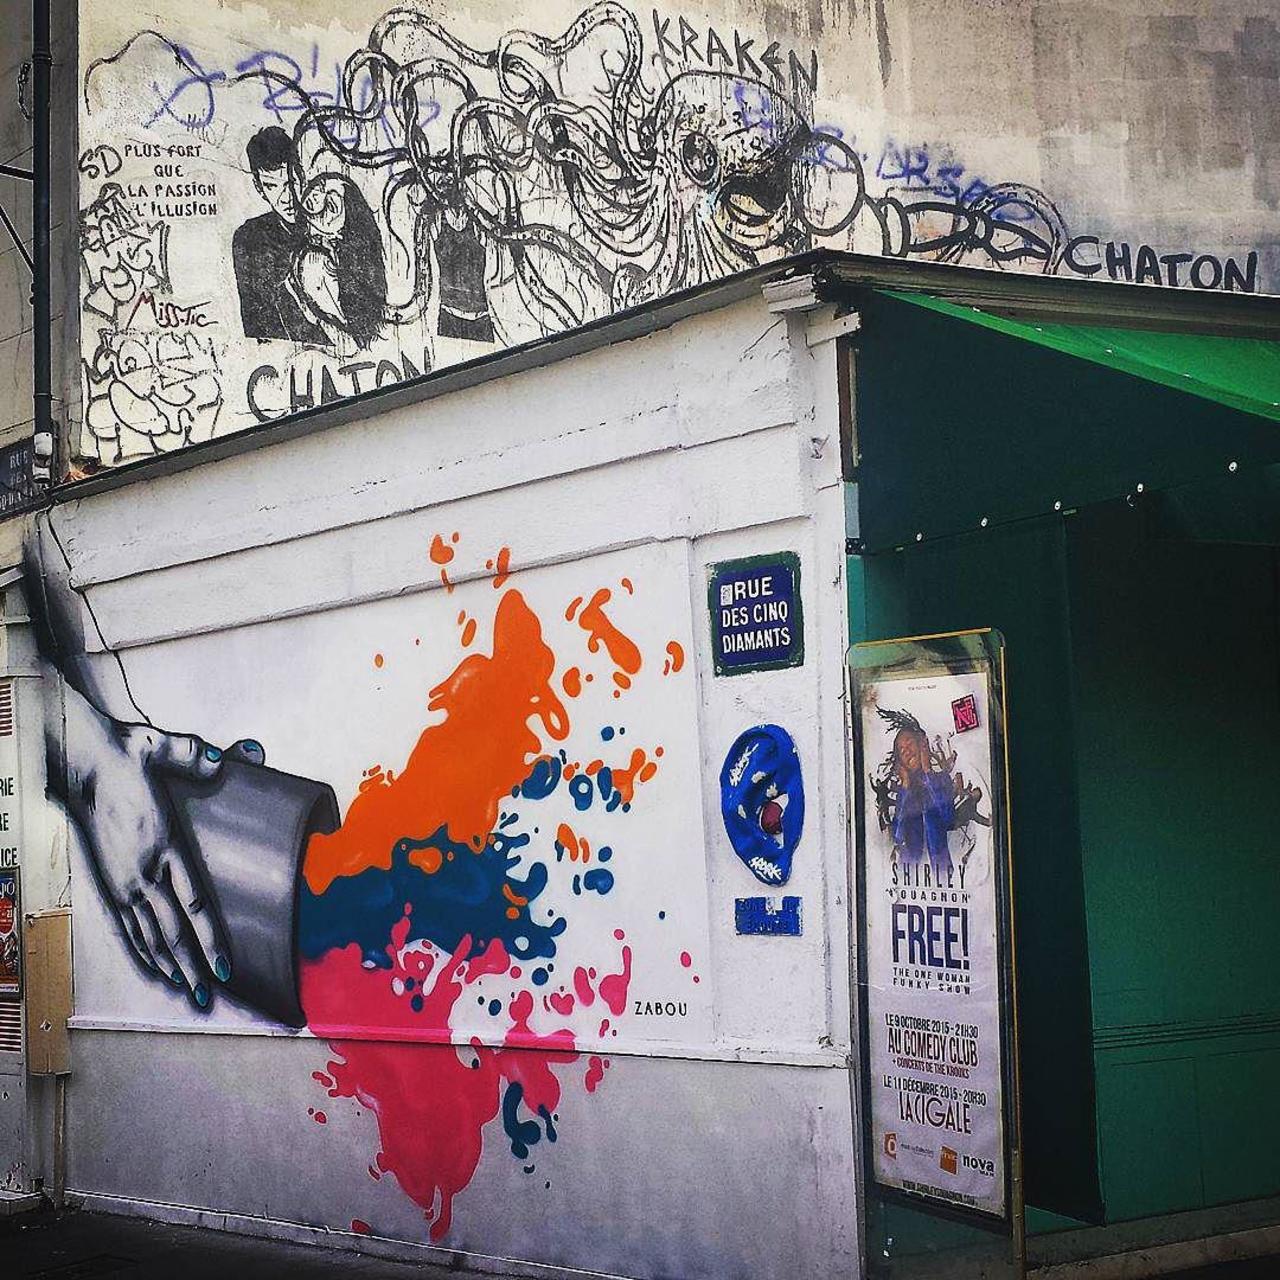 #Paris #graffiti photo by @streetartparischris http://ift.tt/1VYD0AQ #StreetArt http://t.co/3ztfJVzFJS